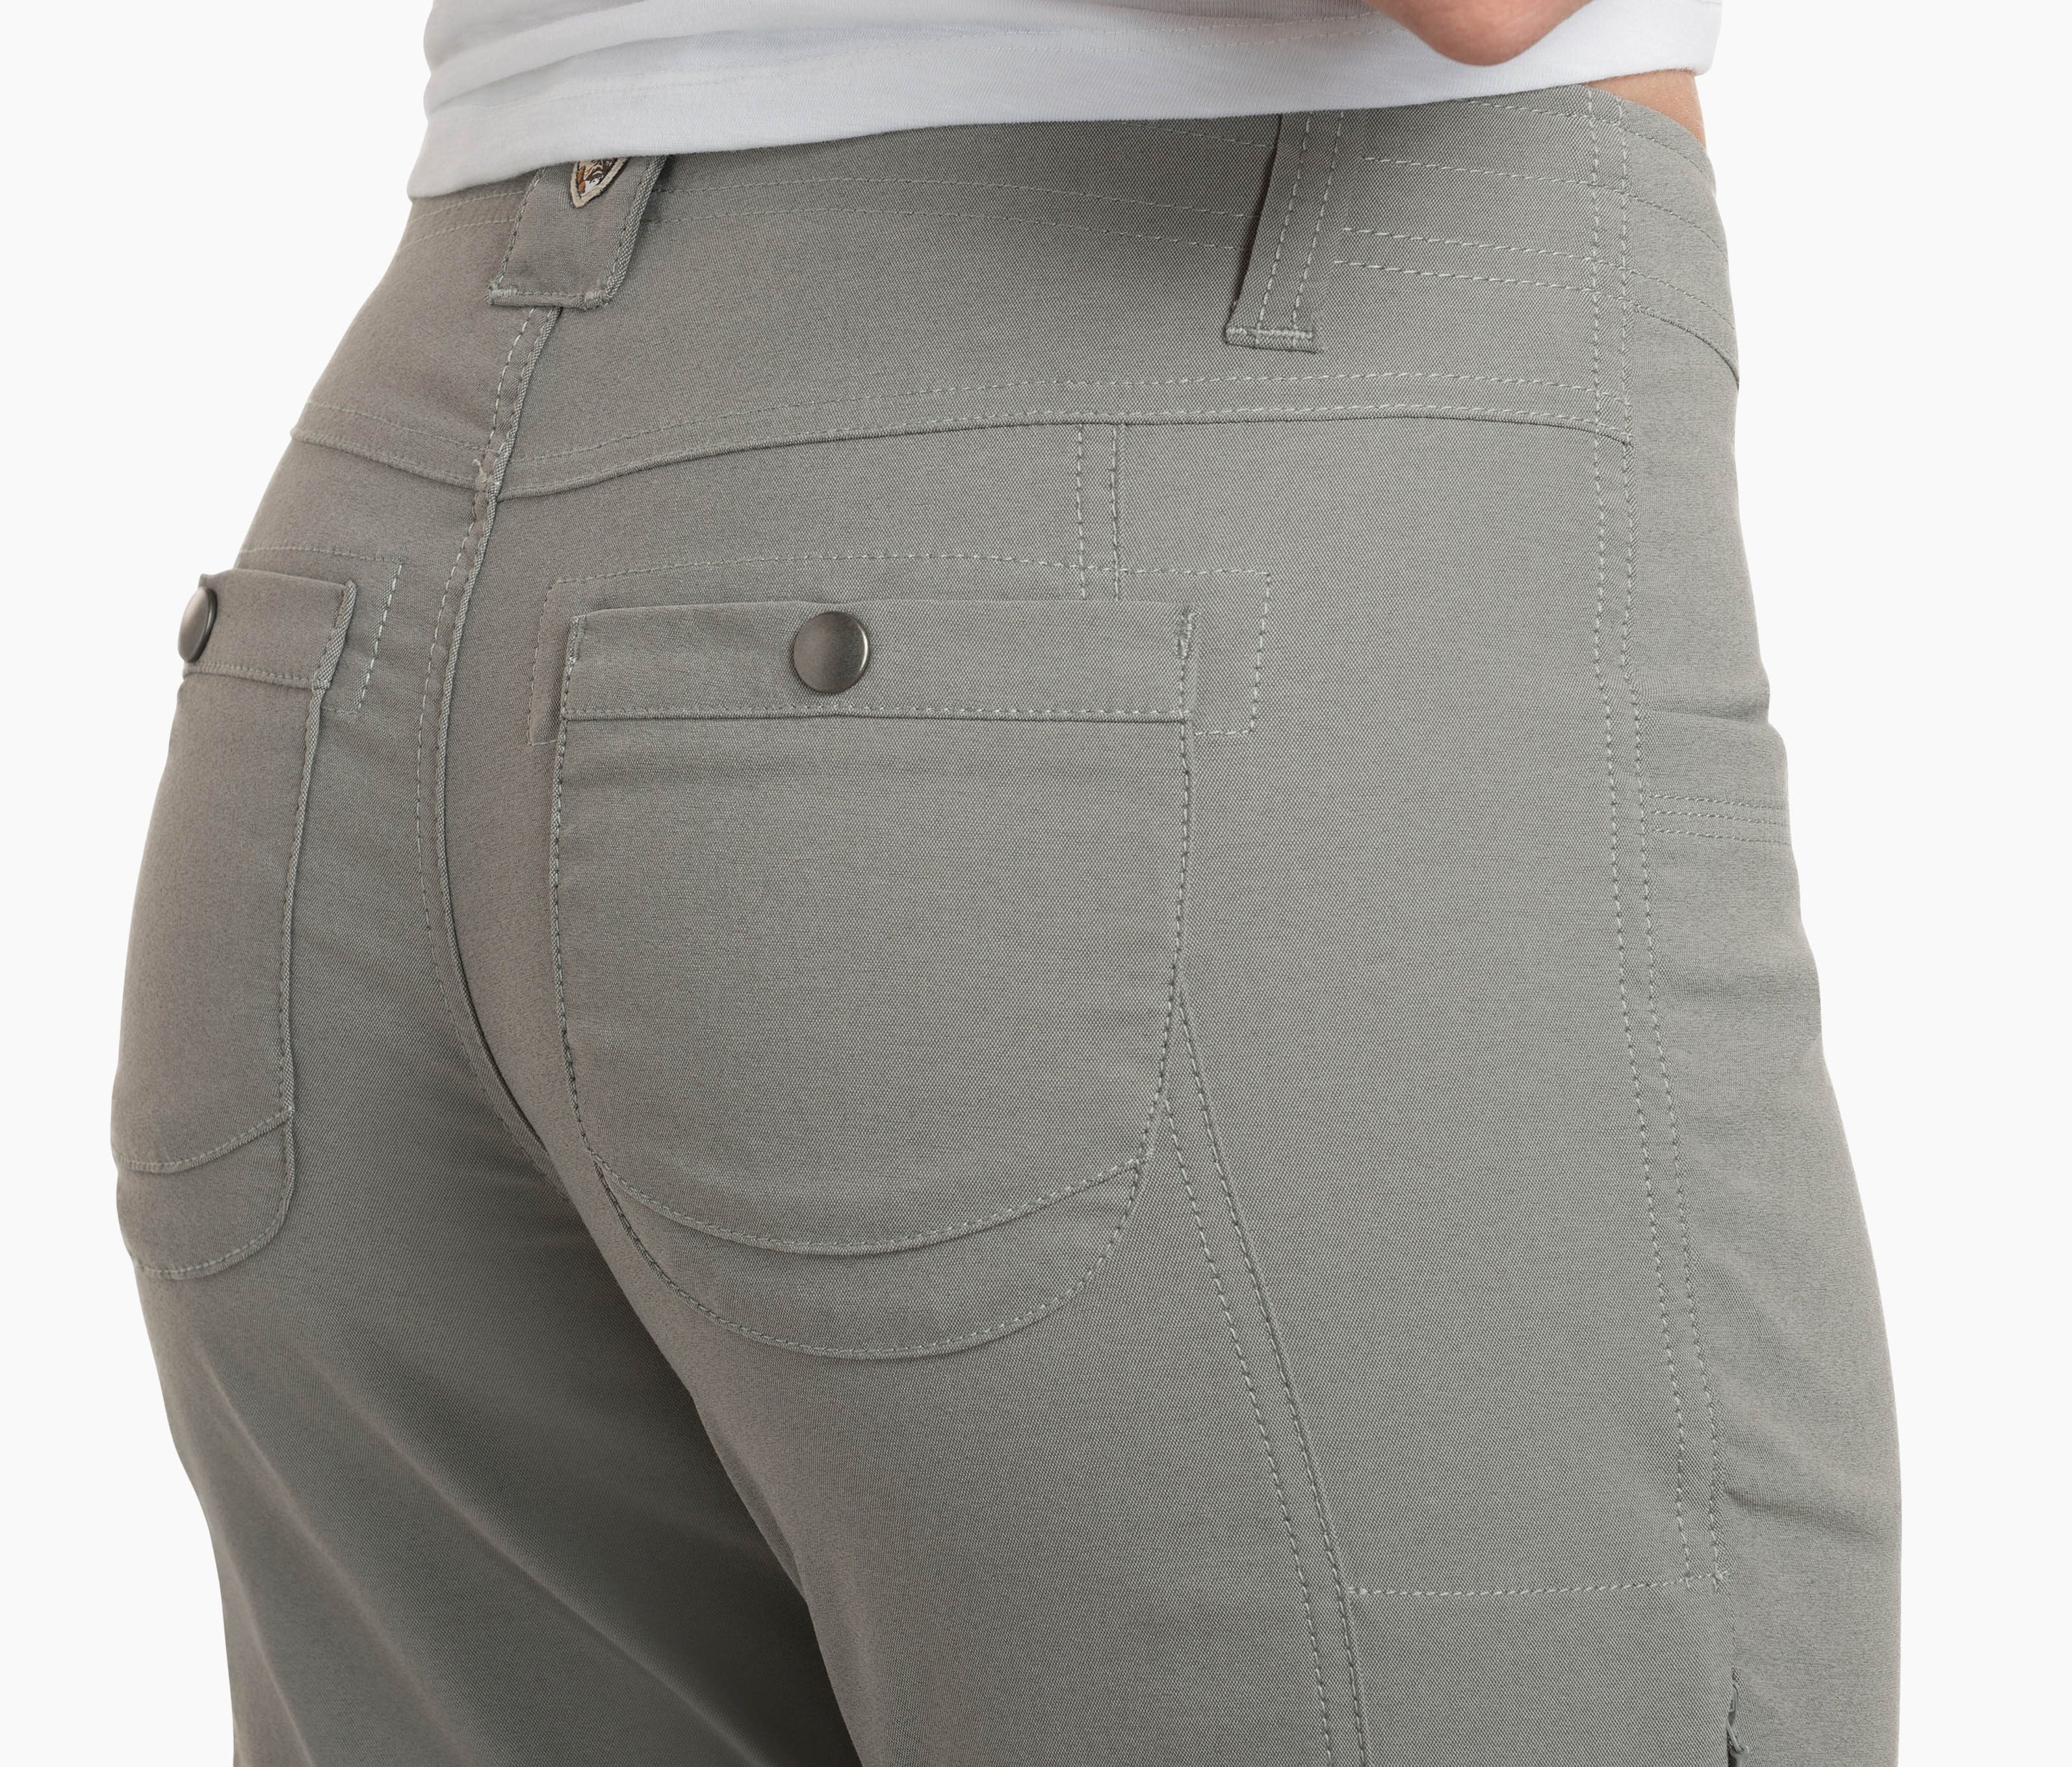 Trekr™ Kapri in Women's Pants